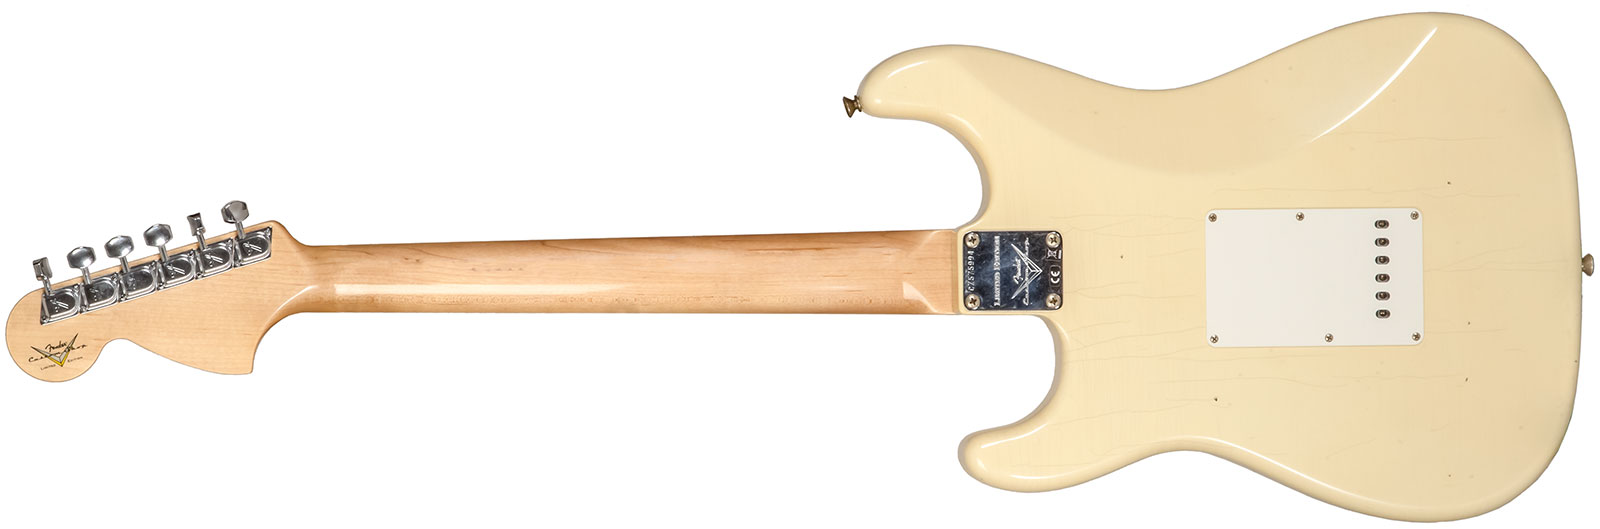 Fender Custom Shop Strat 1969 3s Trem Mn #cz576216 - Journeyman Relic Aged Vintage White - Str shape electric guitar - Variation 1